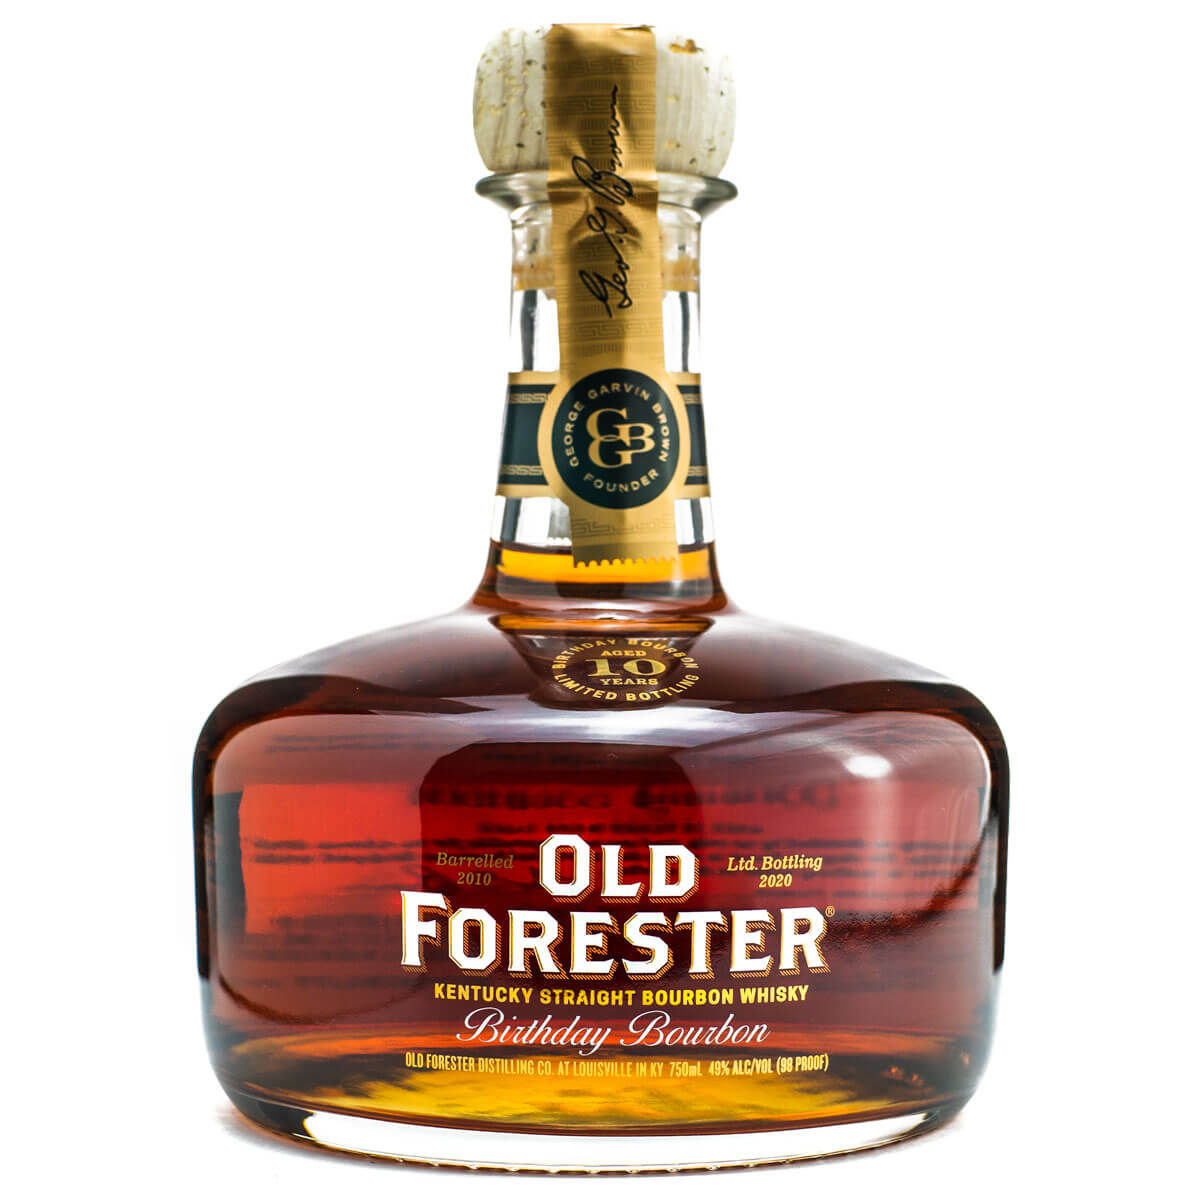 Old Forester Birthday Bourbon bottle